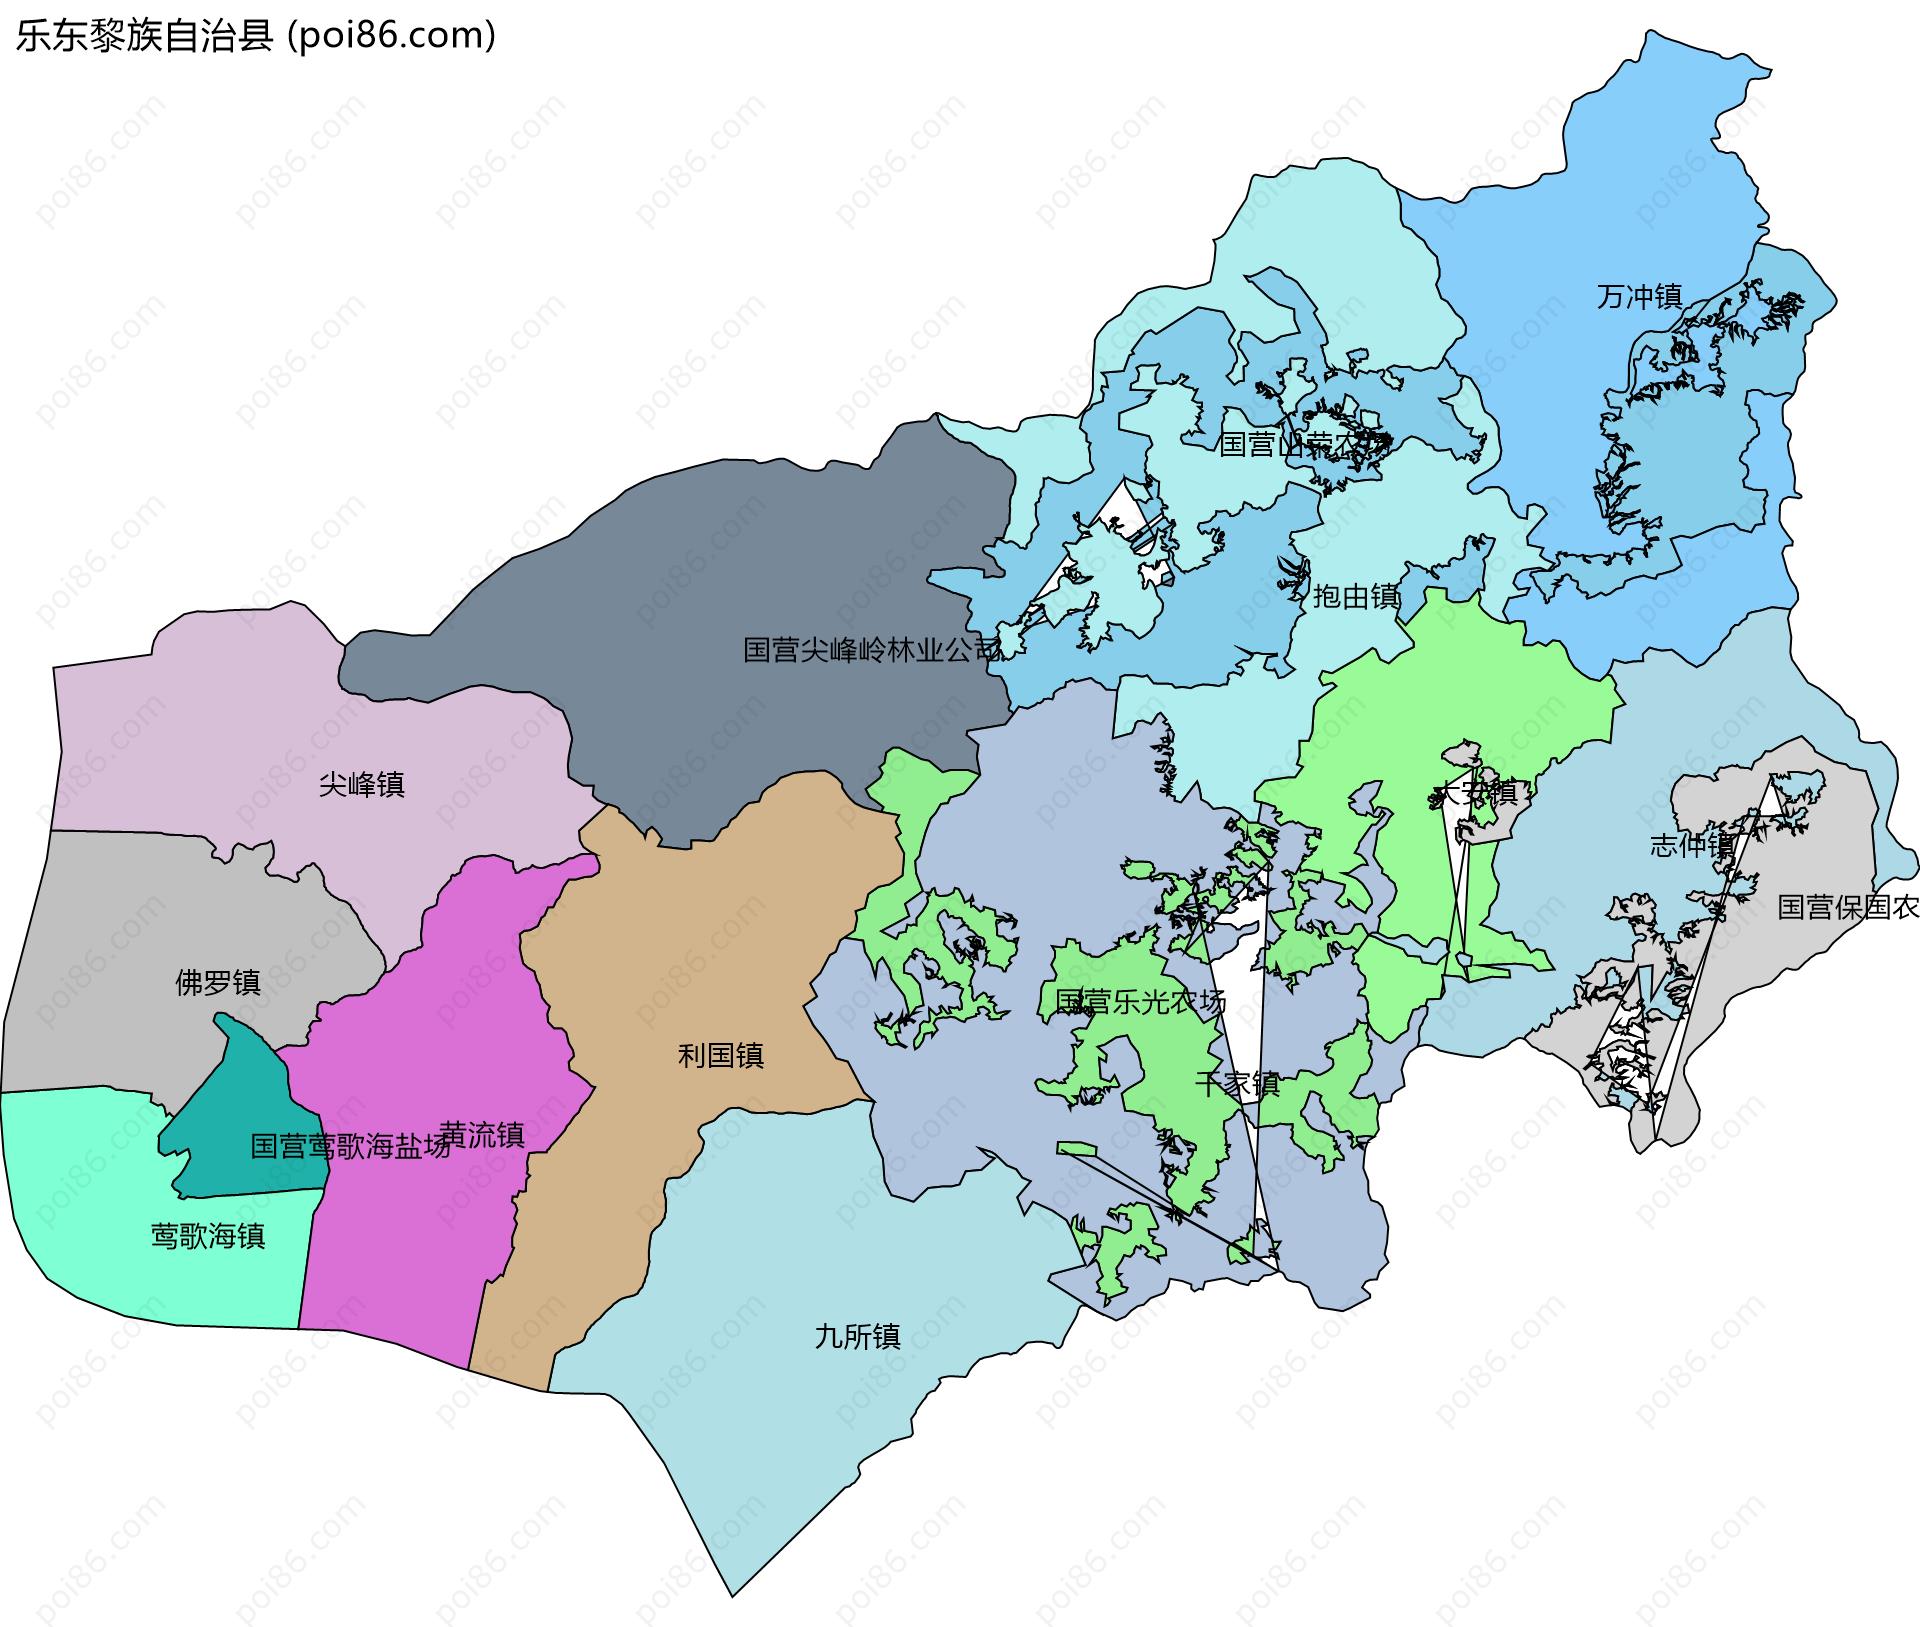 乐东黎族自治县边界地图